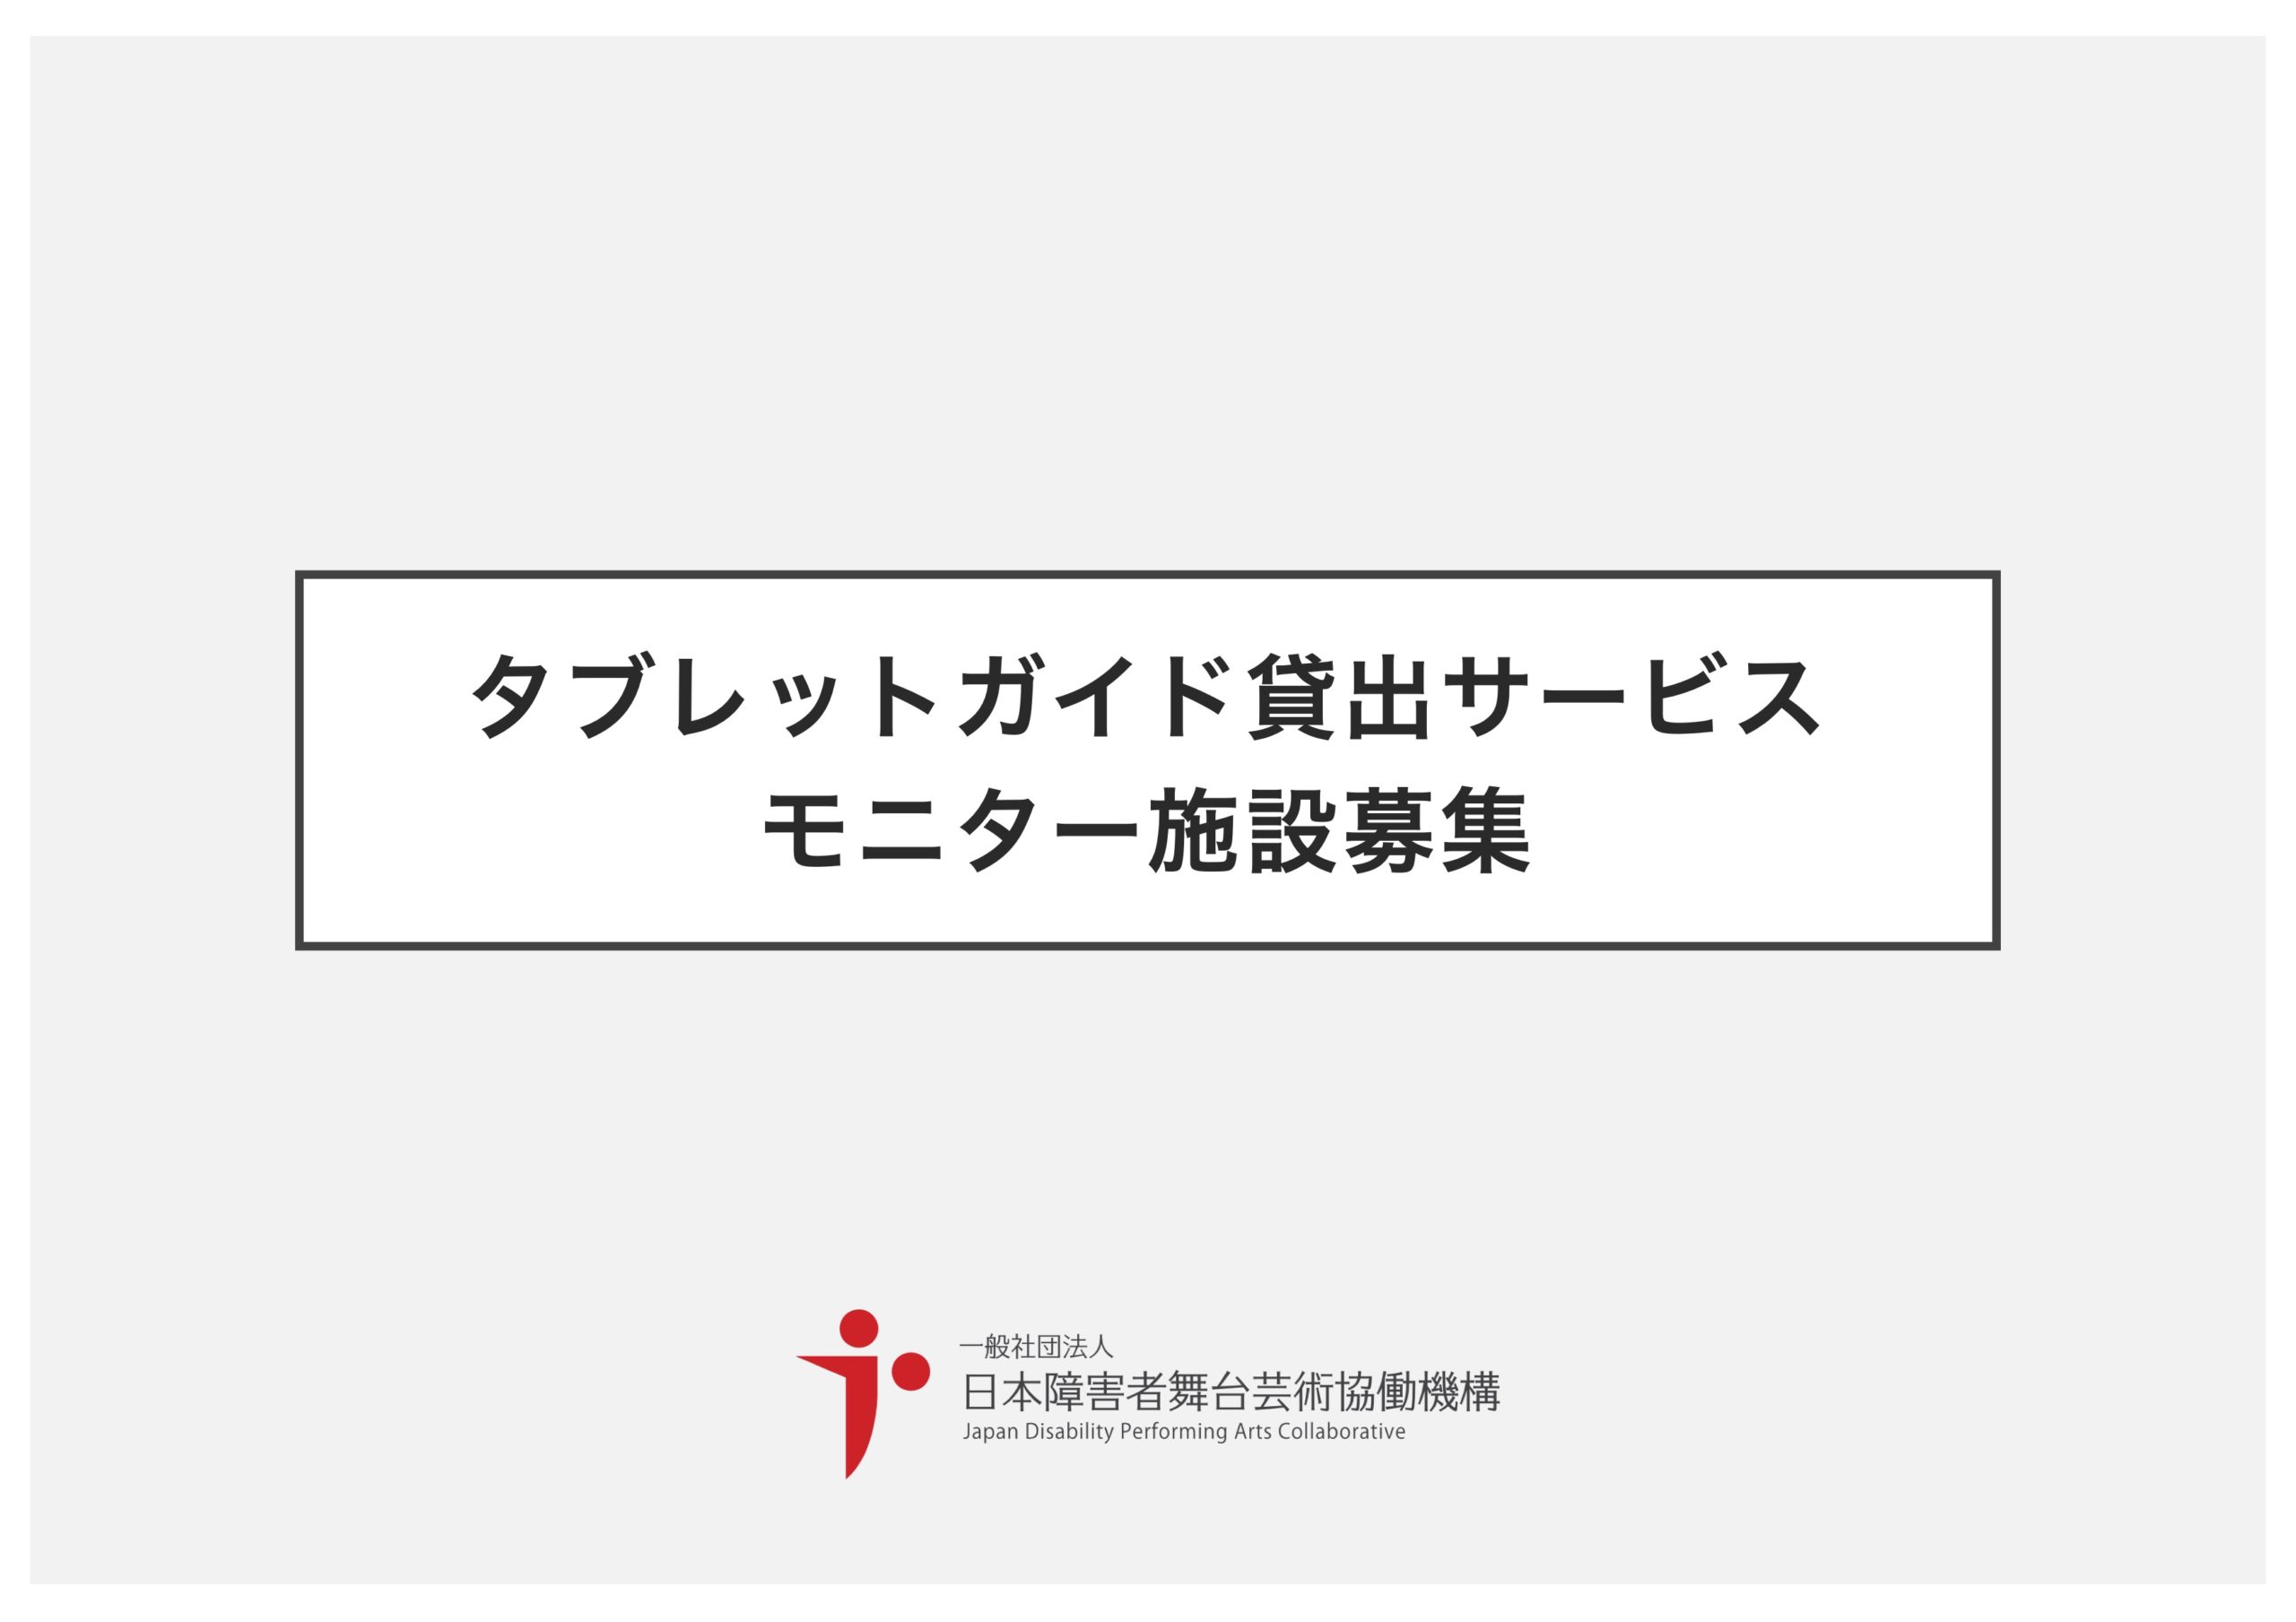 公文協 Jdpa タブレット字幕モニター募集 Japan Disability Performing Arts Collaborative